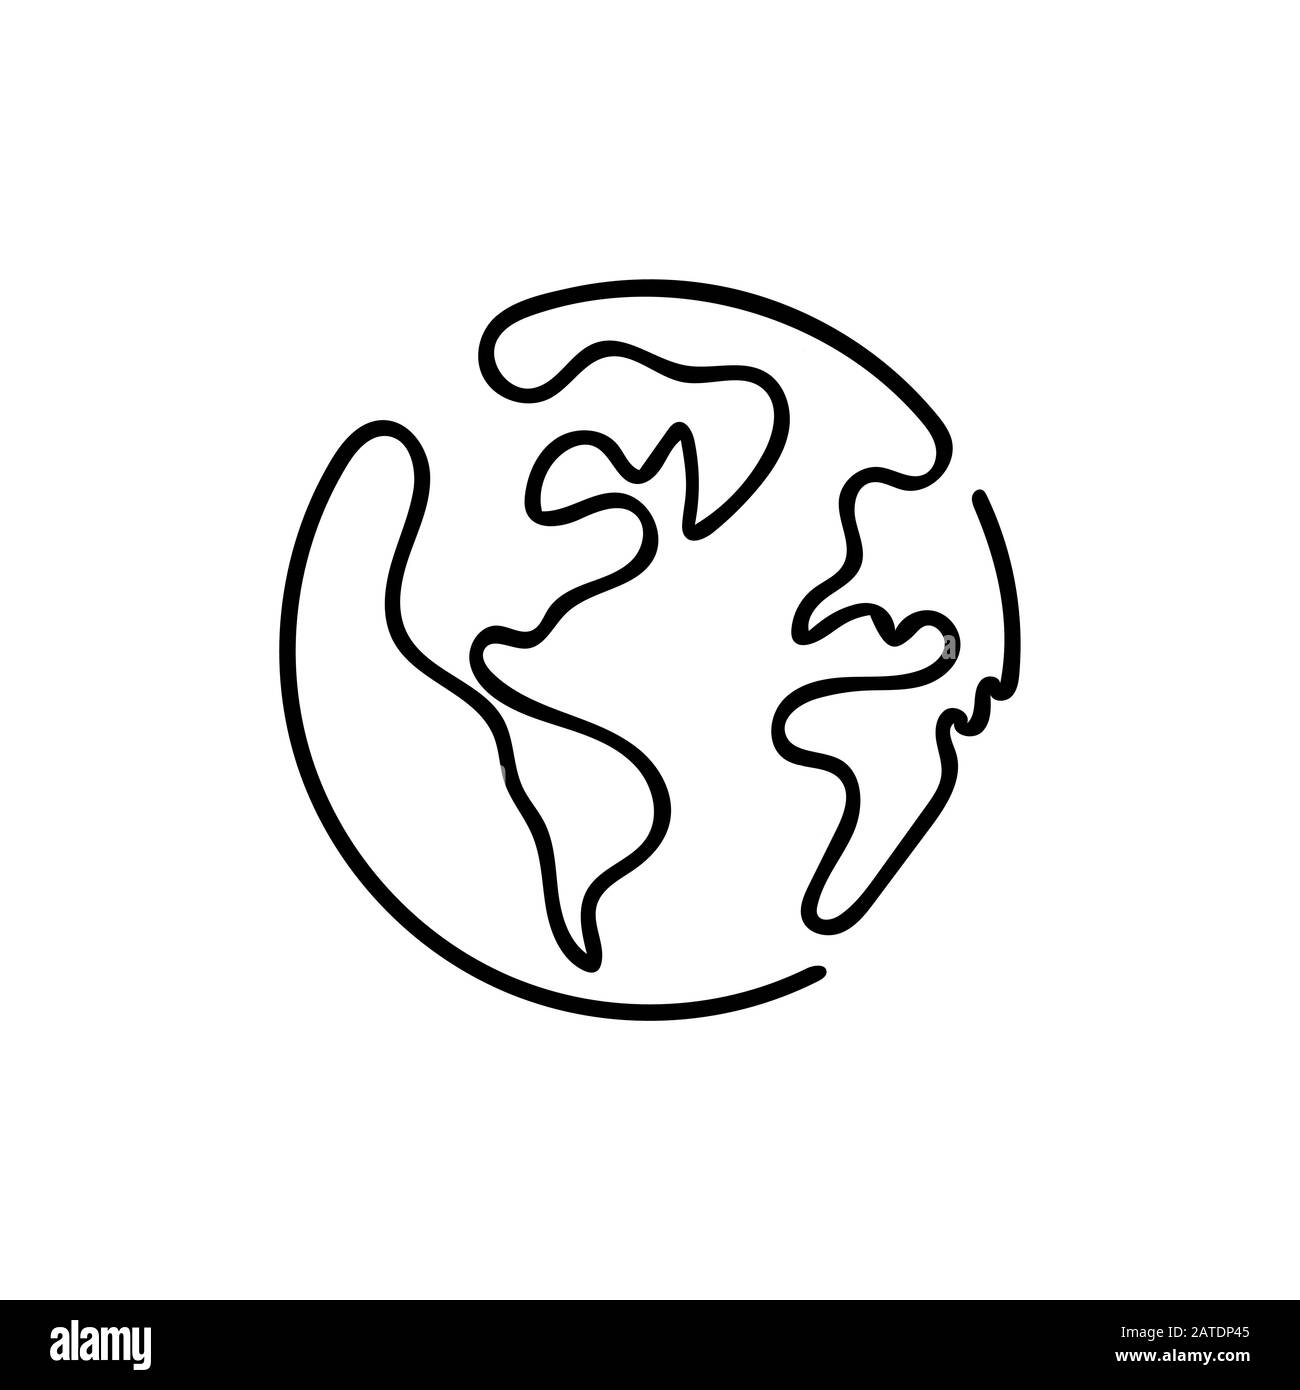 Planète Terre Line art - Un monde de style de ligne. Design vectoriel simple et moderne de style minimaliste pour affiches, dépliants, tee-shirts, cartes, invitations, autocollants Illustration de Vecteur